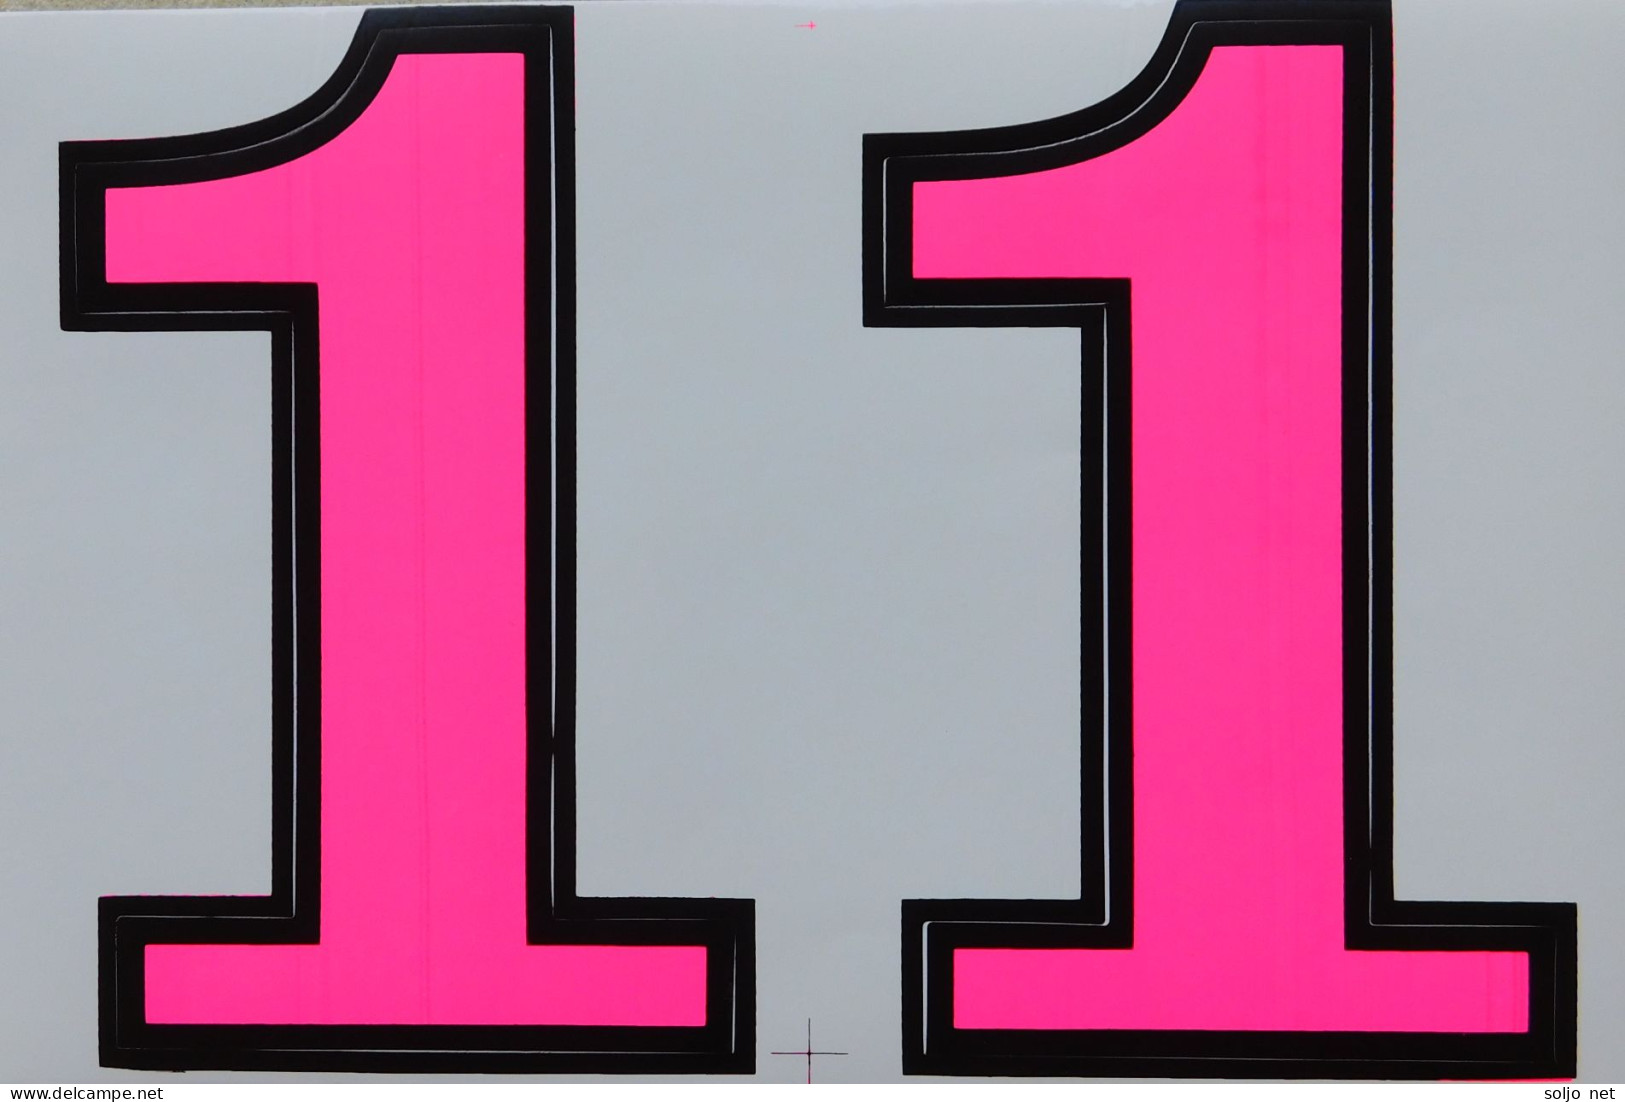 Grosse Nummer 1 Aufkleber 165 Mm Pink Big Number Sticker A4 1 Bogen 27 X 18 Cm ST086 - Scrapbooking